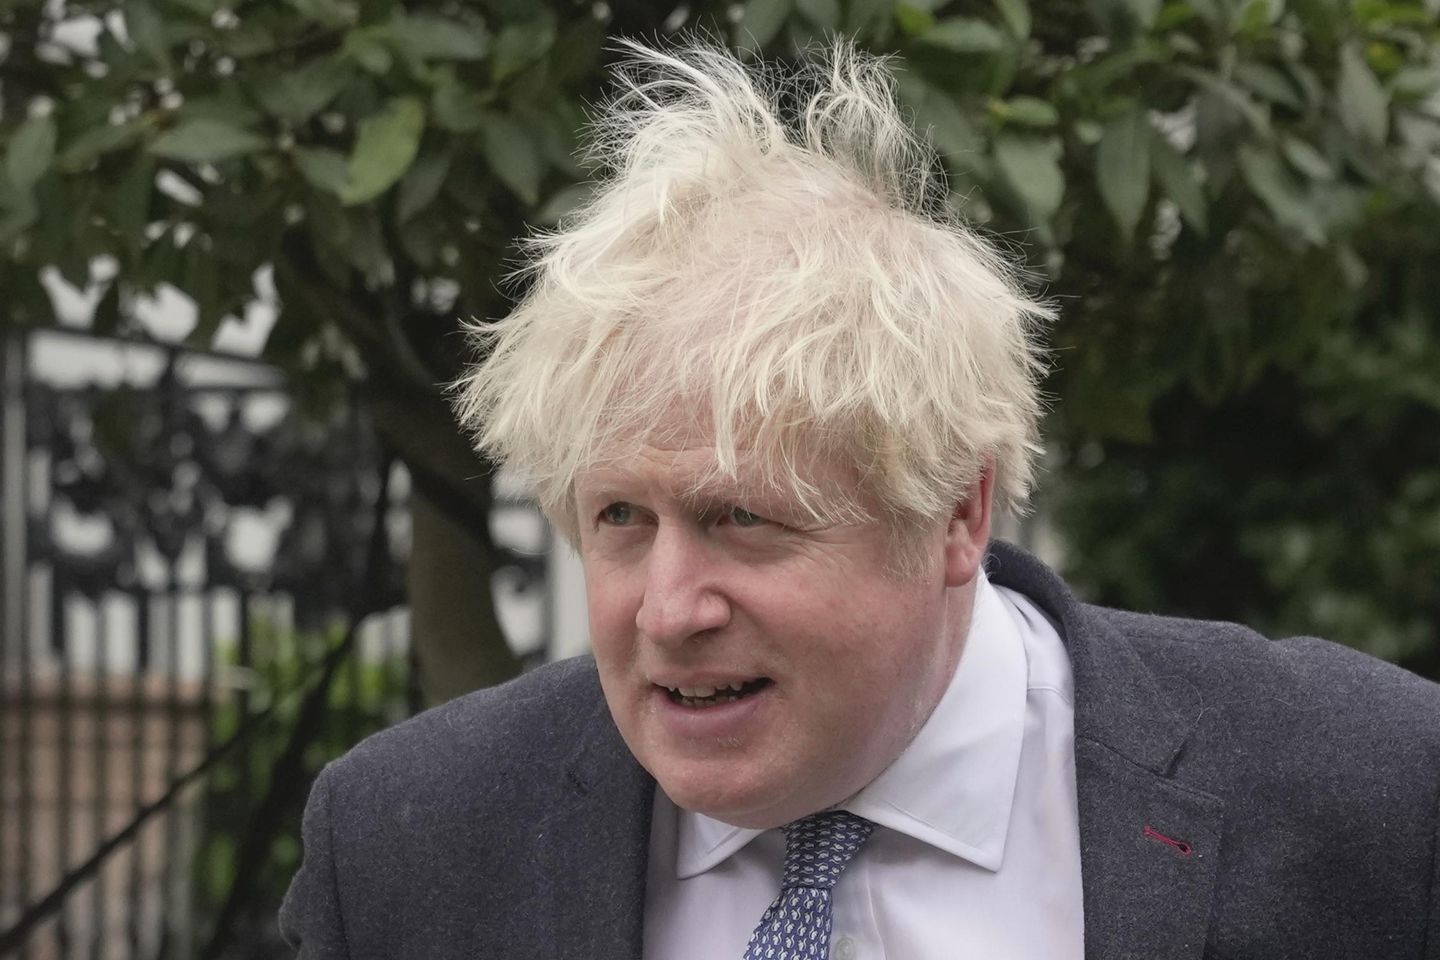 Yeminli Boris Johnson, 'parti kapısı' konusunda yalan söylediğini reddetti